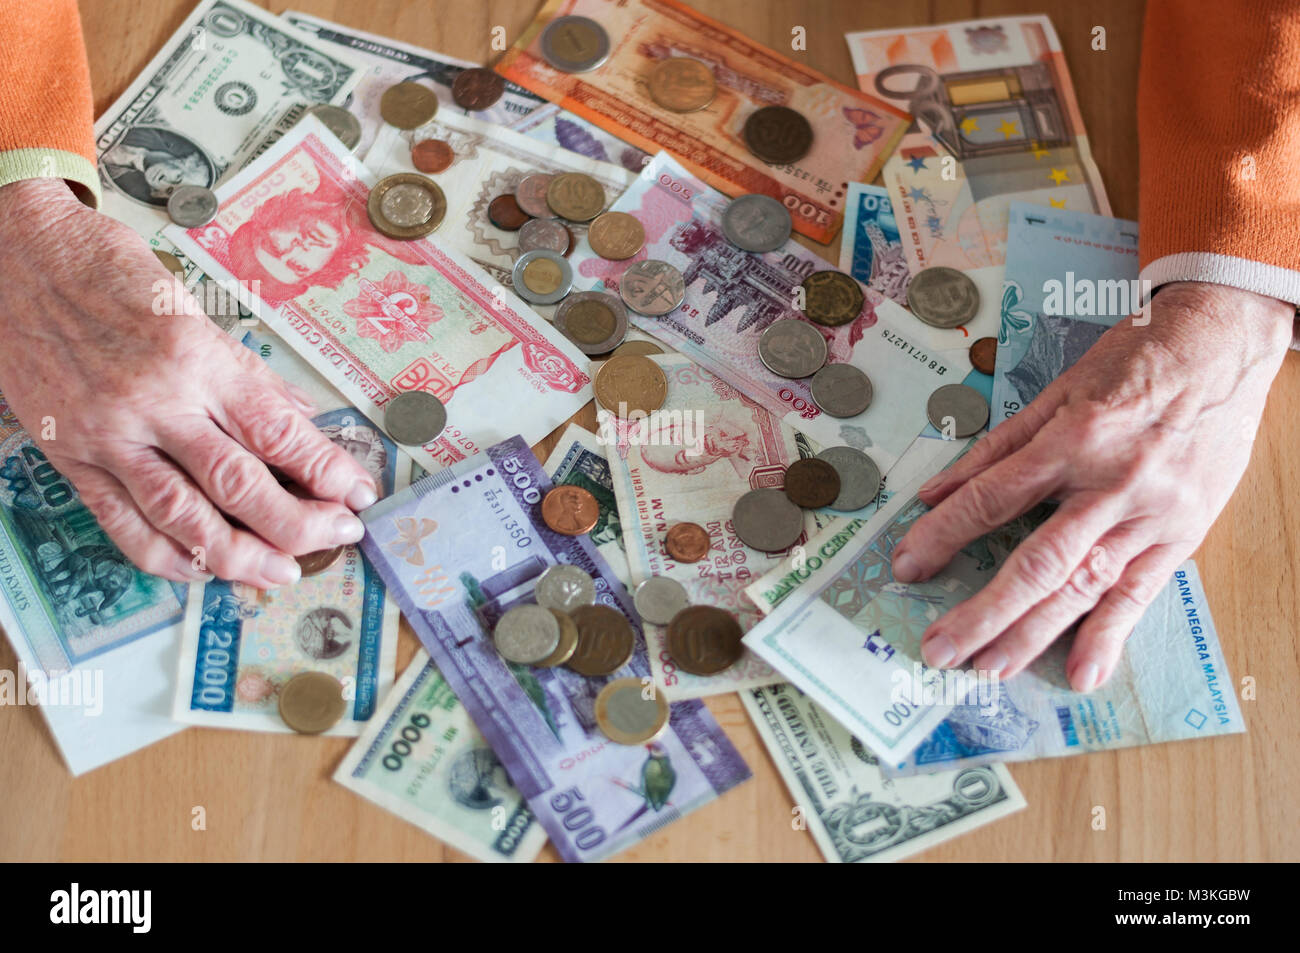 Haende von Seniorin mit verschiedene Geldscheine und Muenzen auf einem Tisch. Stock Photo